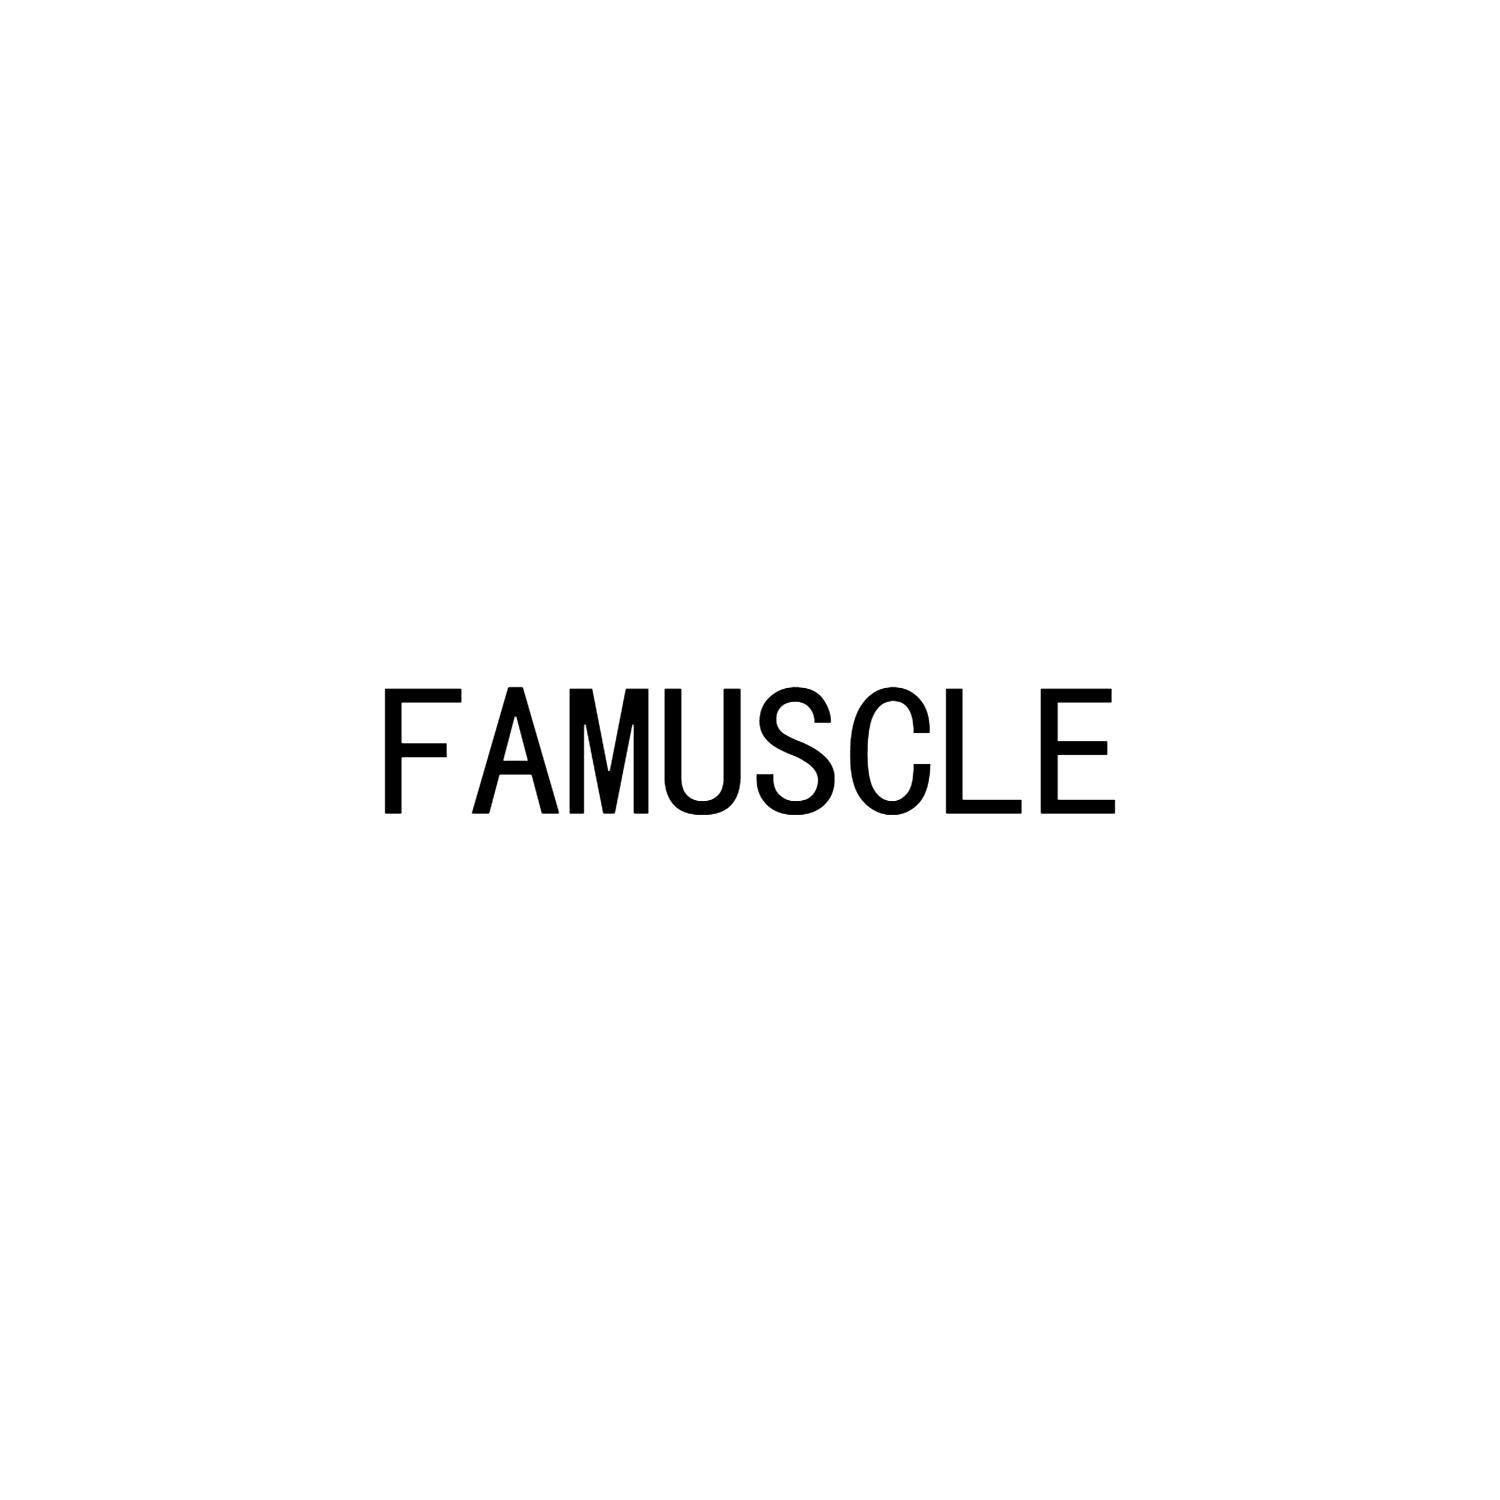 FAMUSCLE